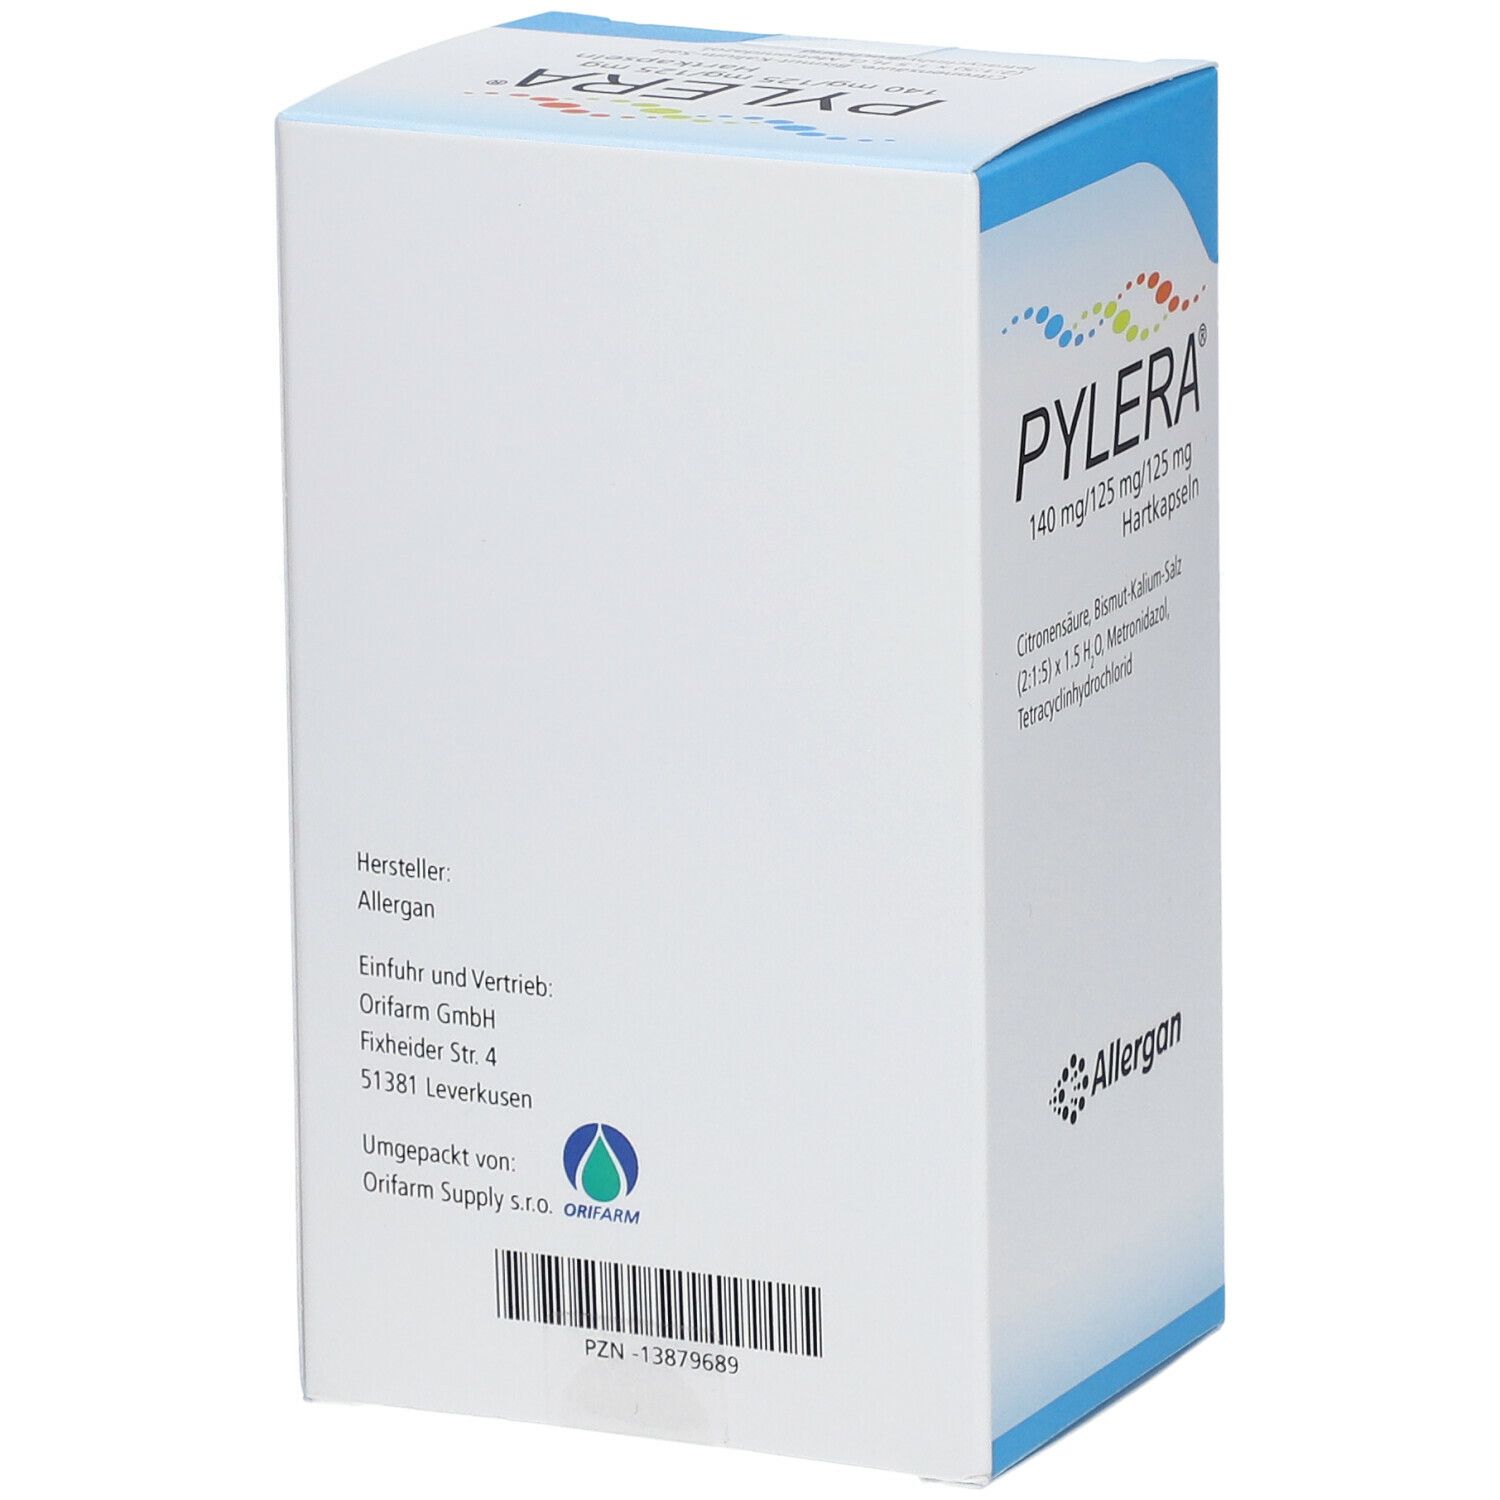 Pylera 140 mg/125 mg/125 mg